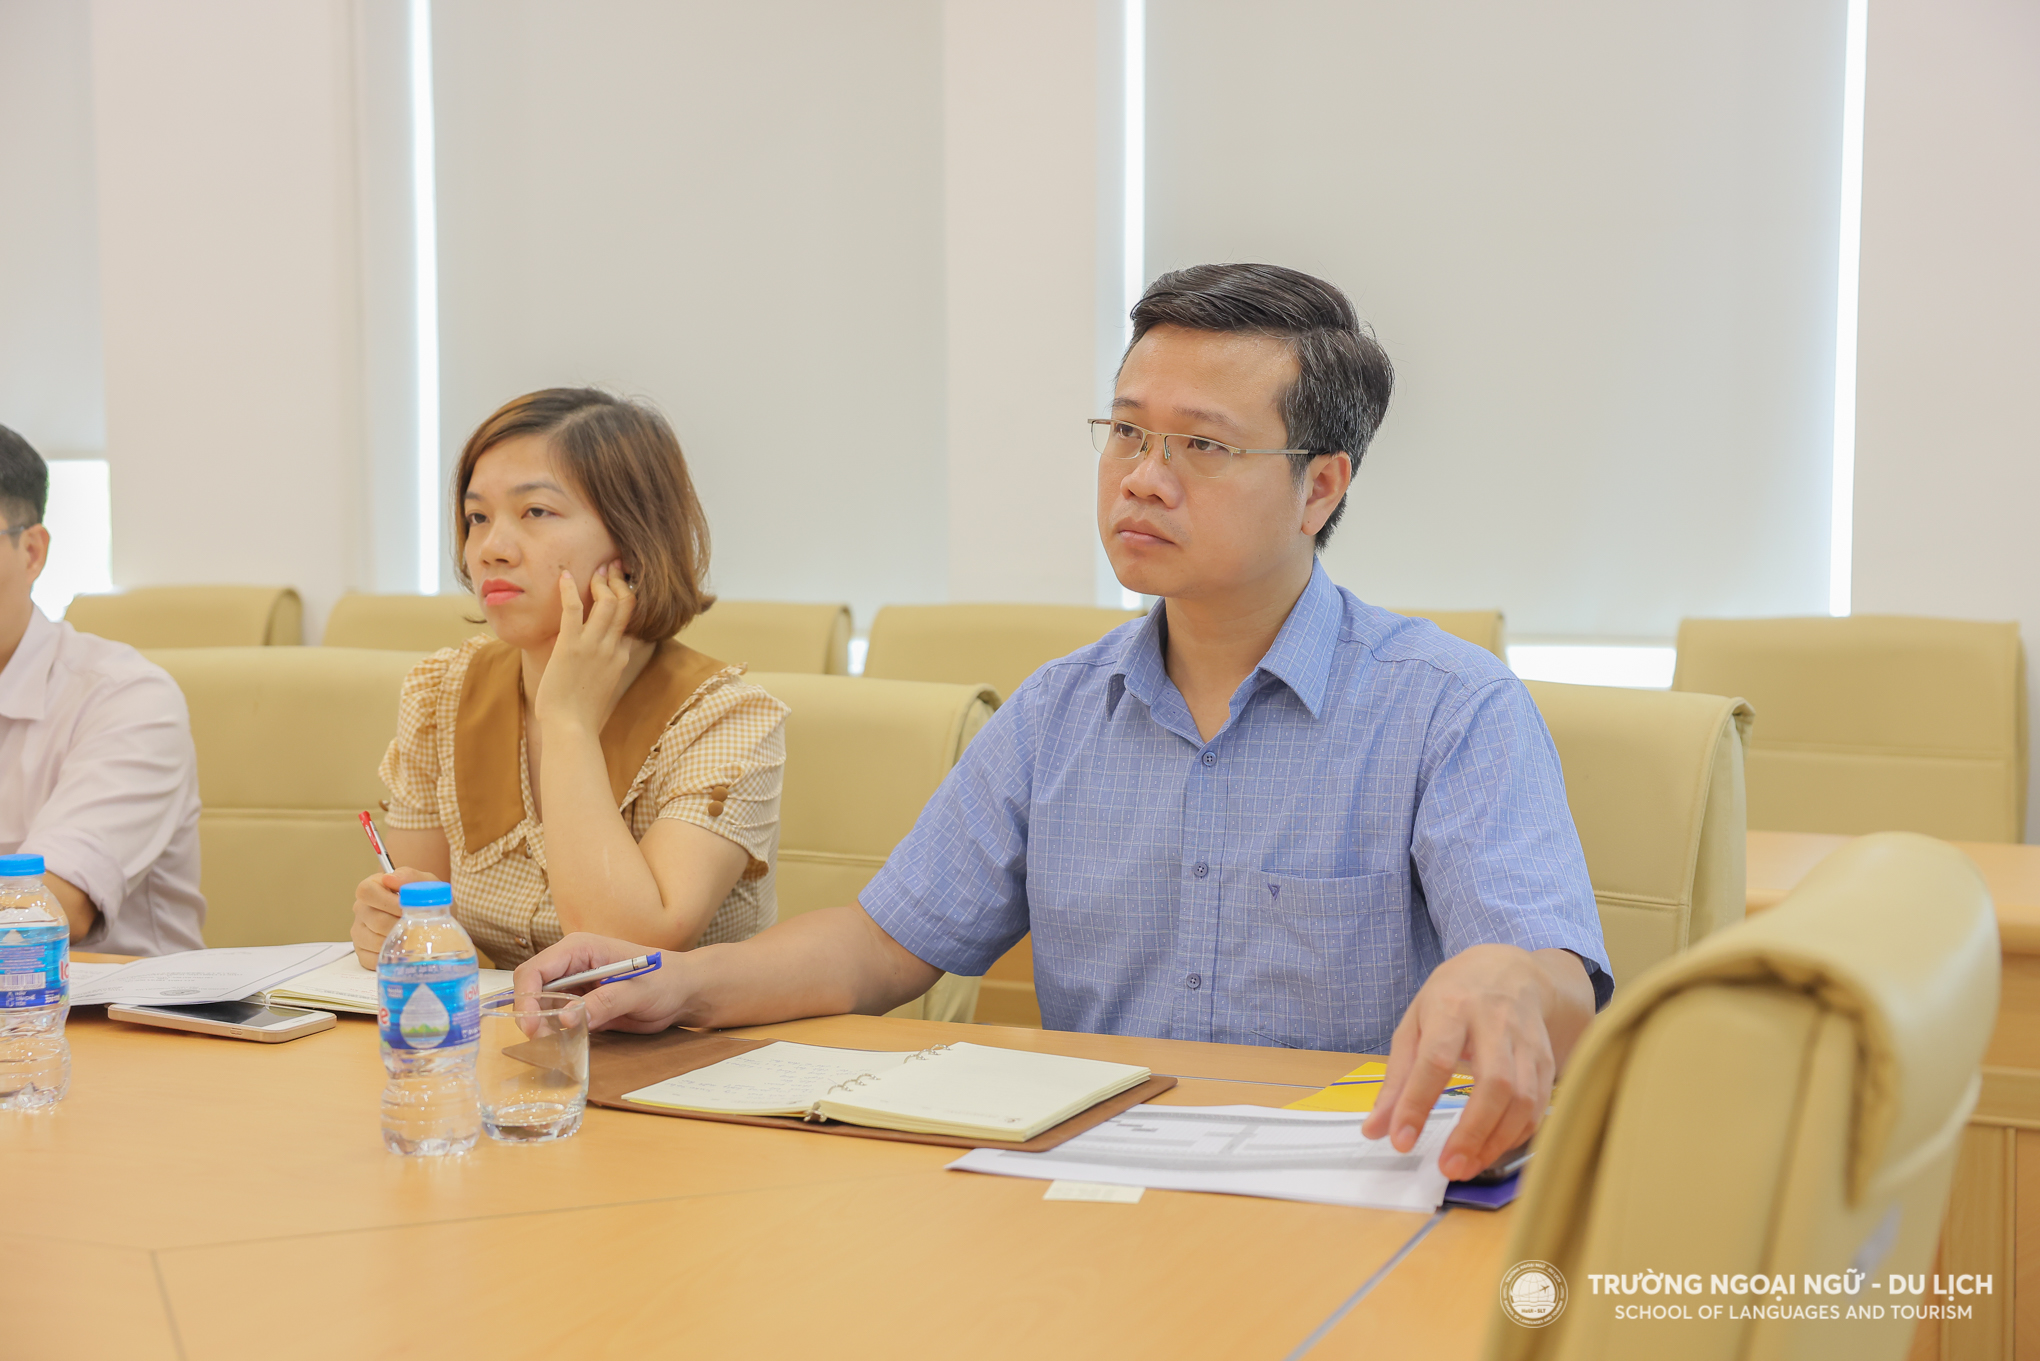 Kết nối hợp tác giữa Trường Ngoại ngữ - Du lịch và Công ty TNHH Công nghiệp JINKO SOLAR